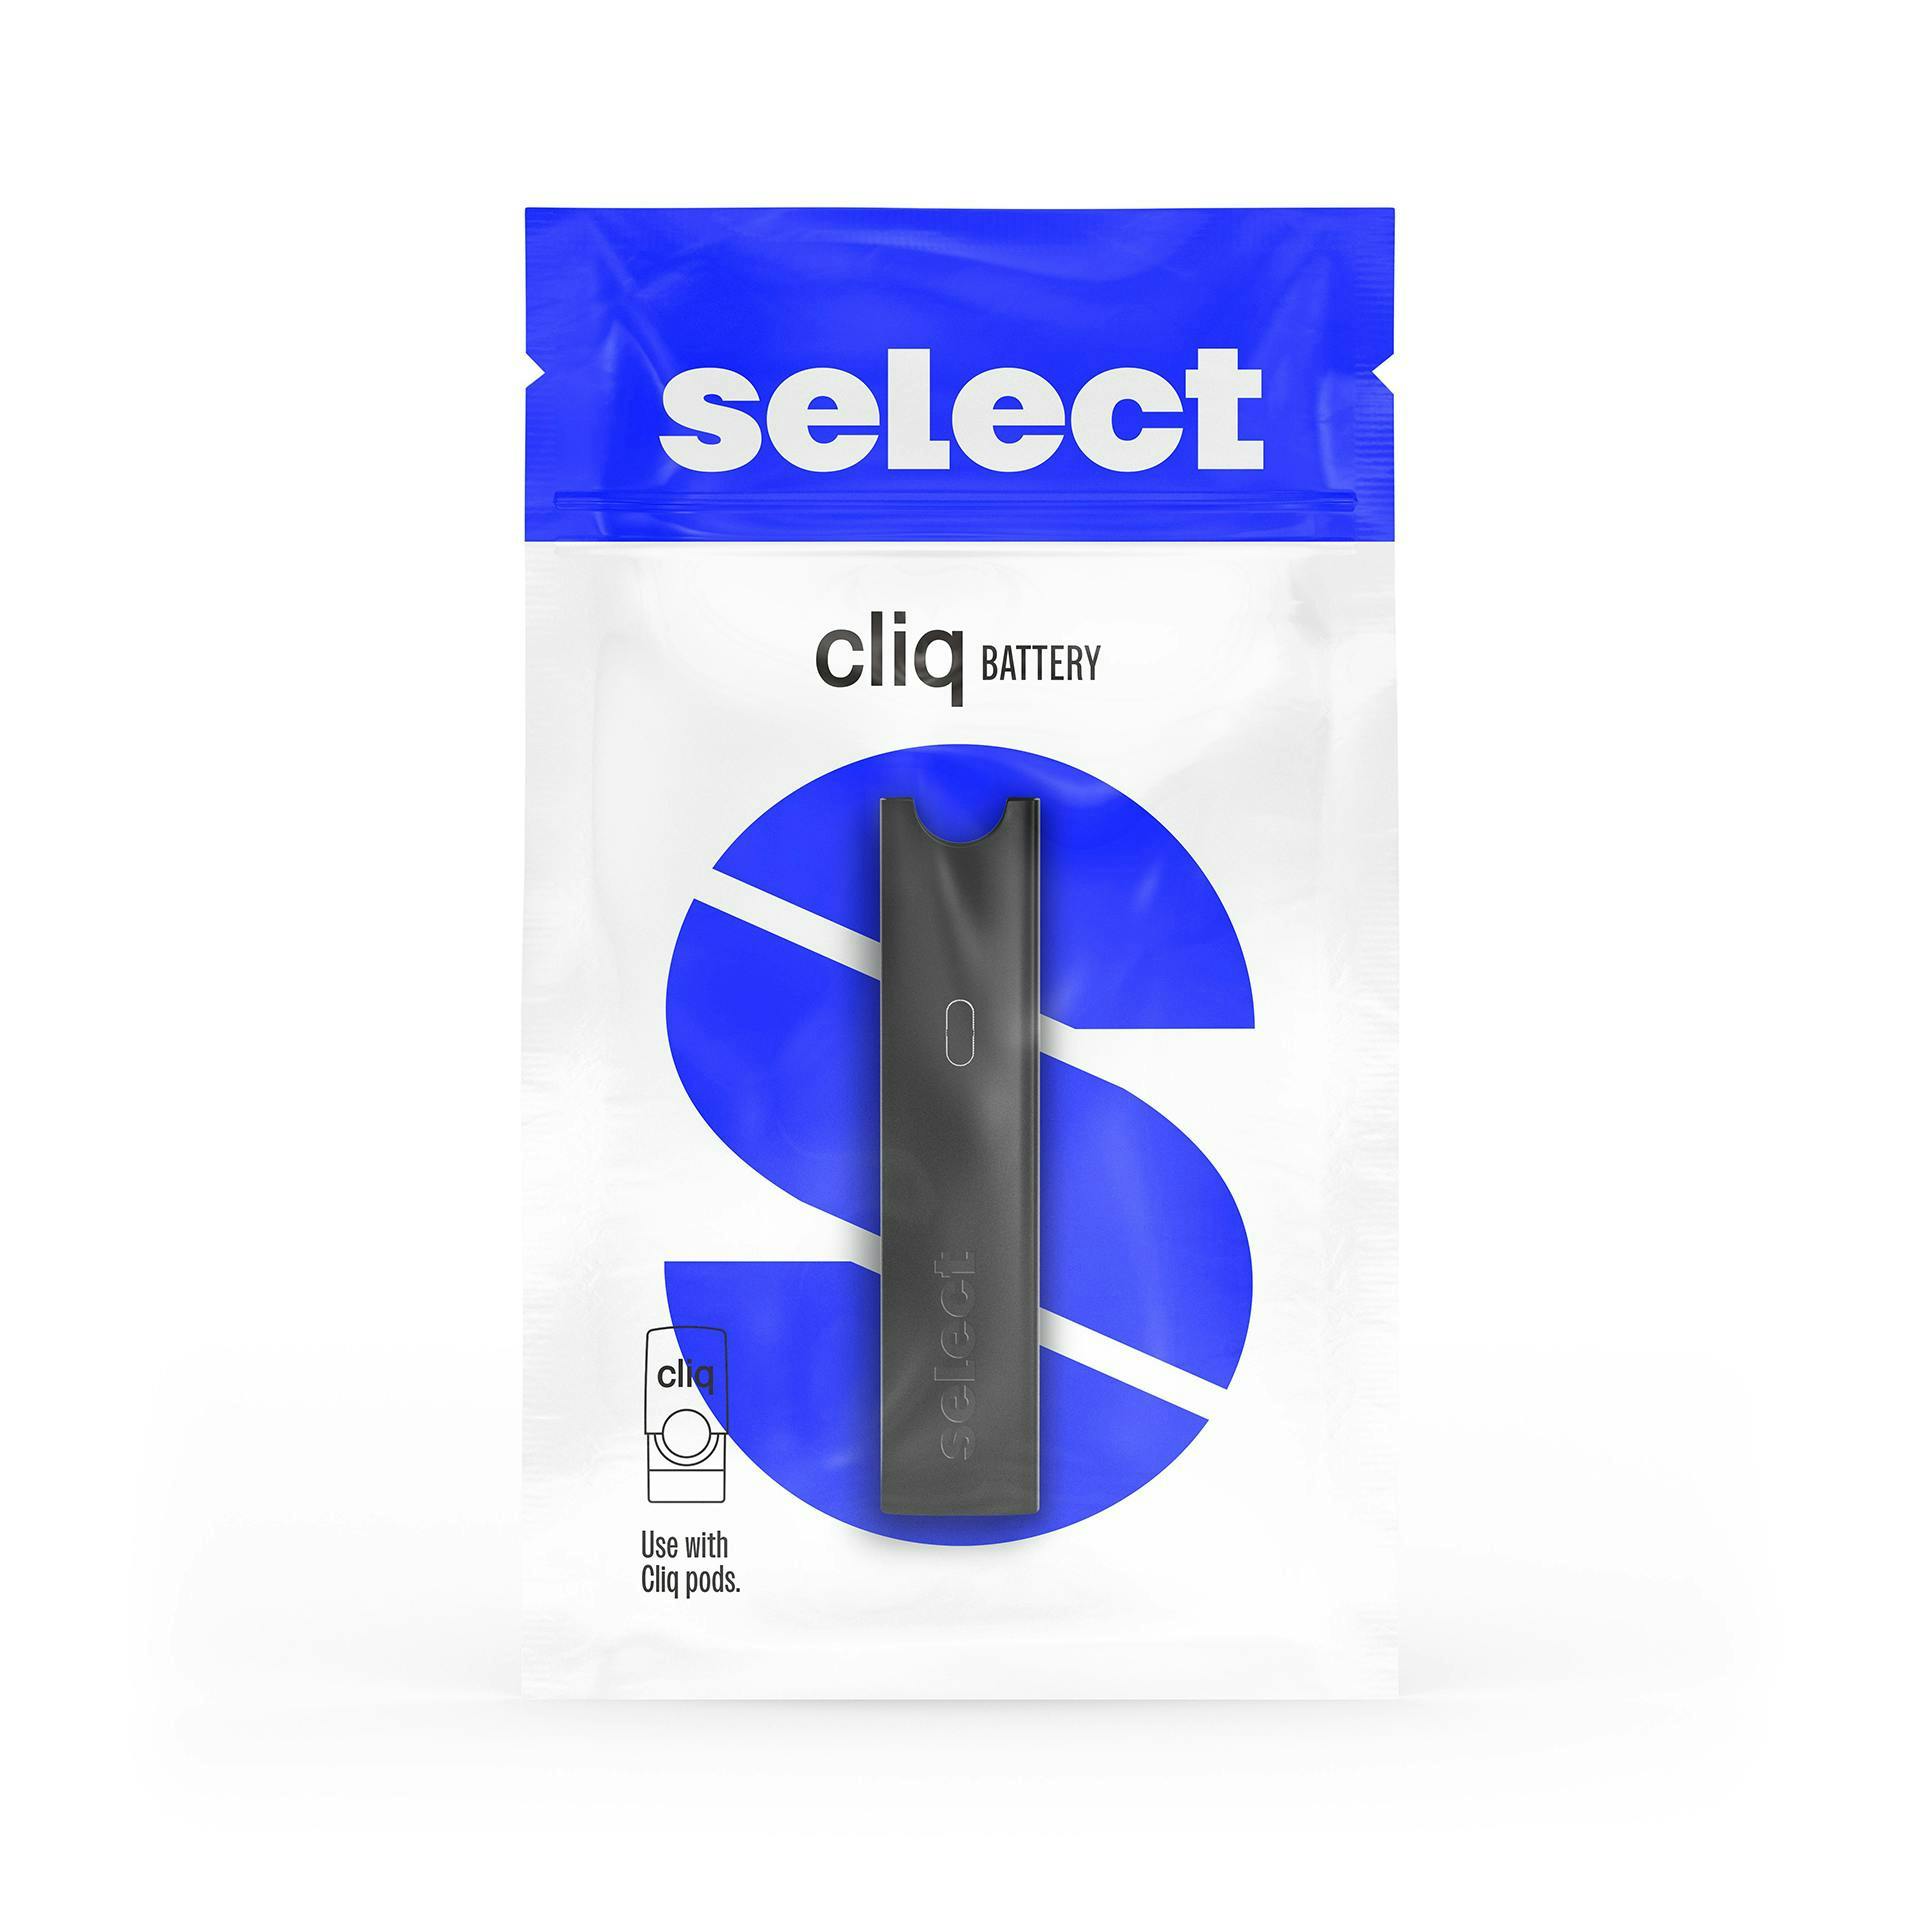 Select Cliq Battery